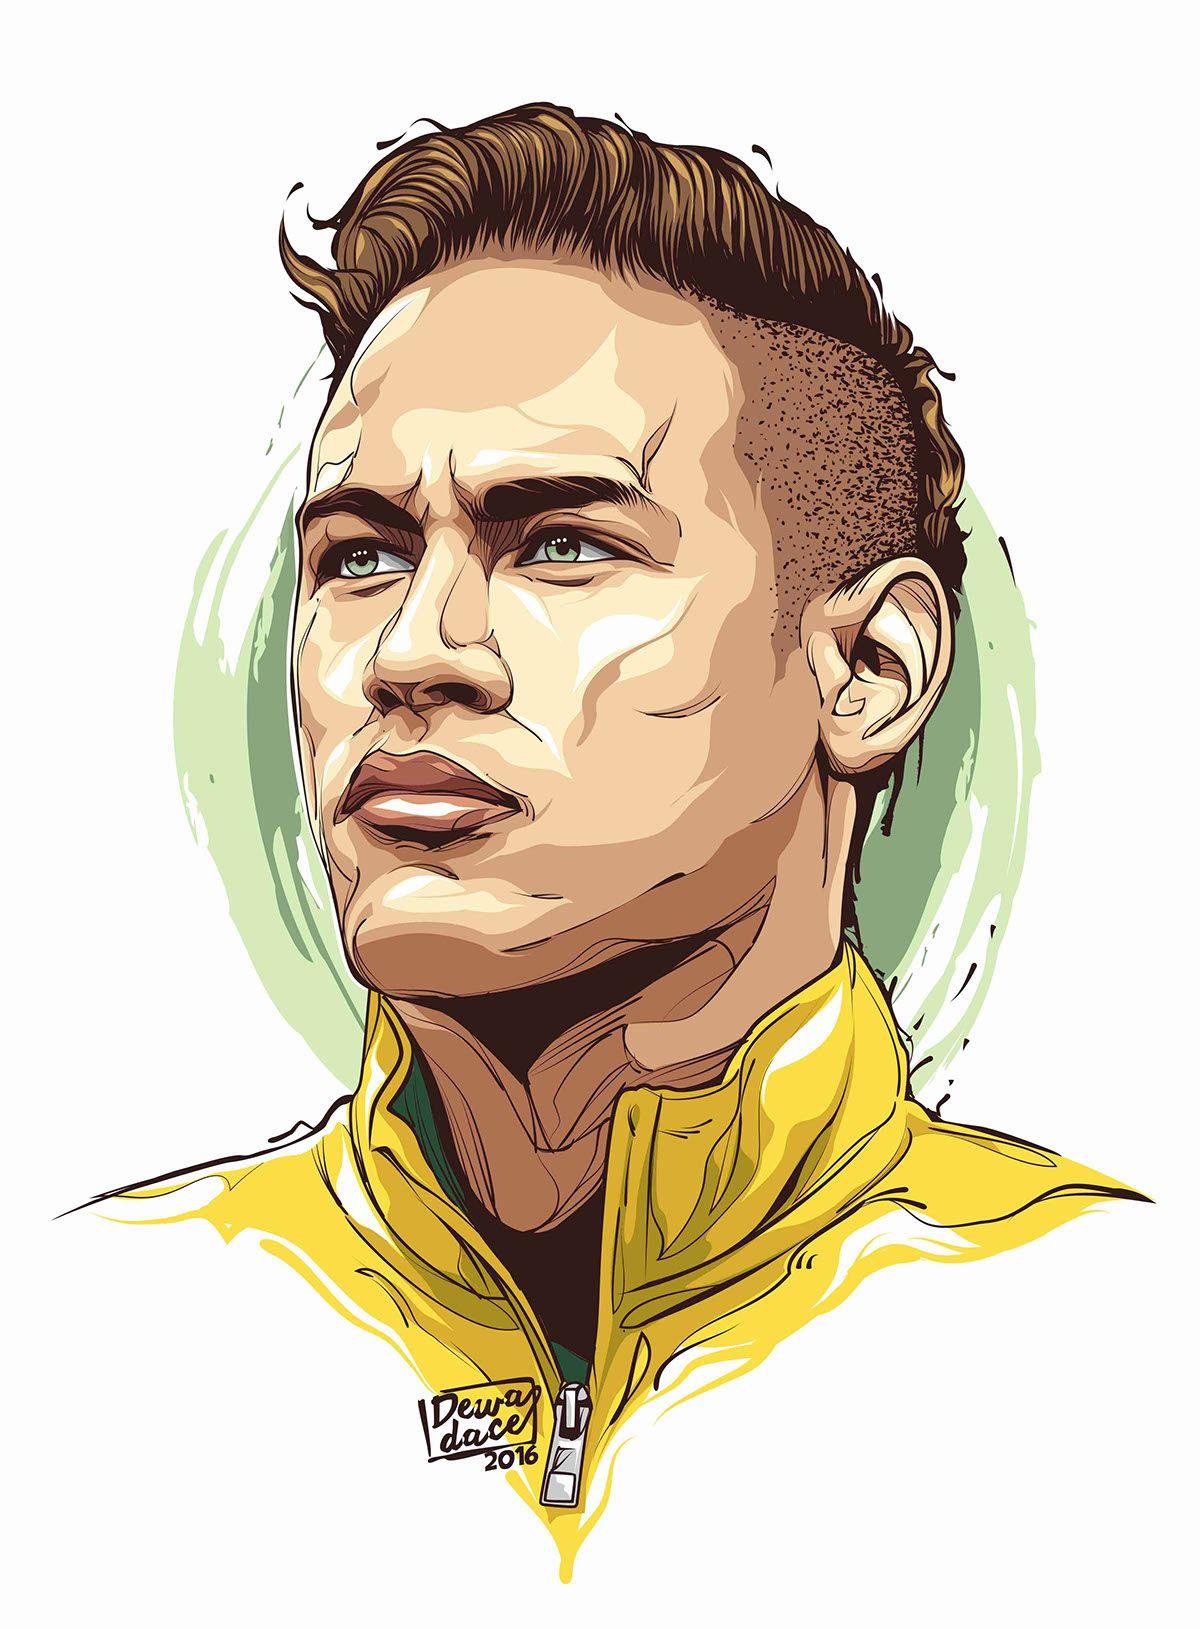 newmar jr. Neymar jr wallpaper, Soccer art, Football player drawing